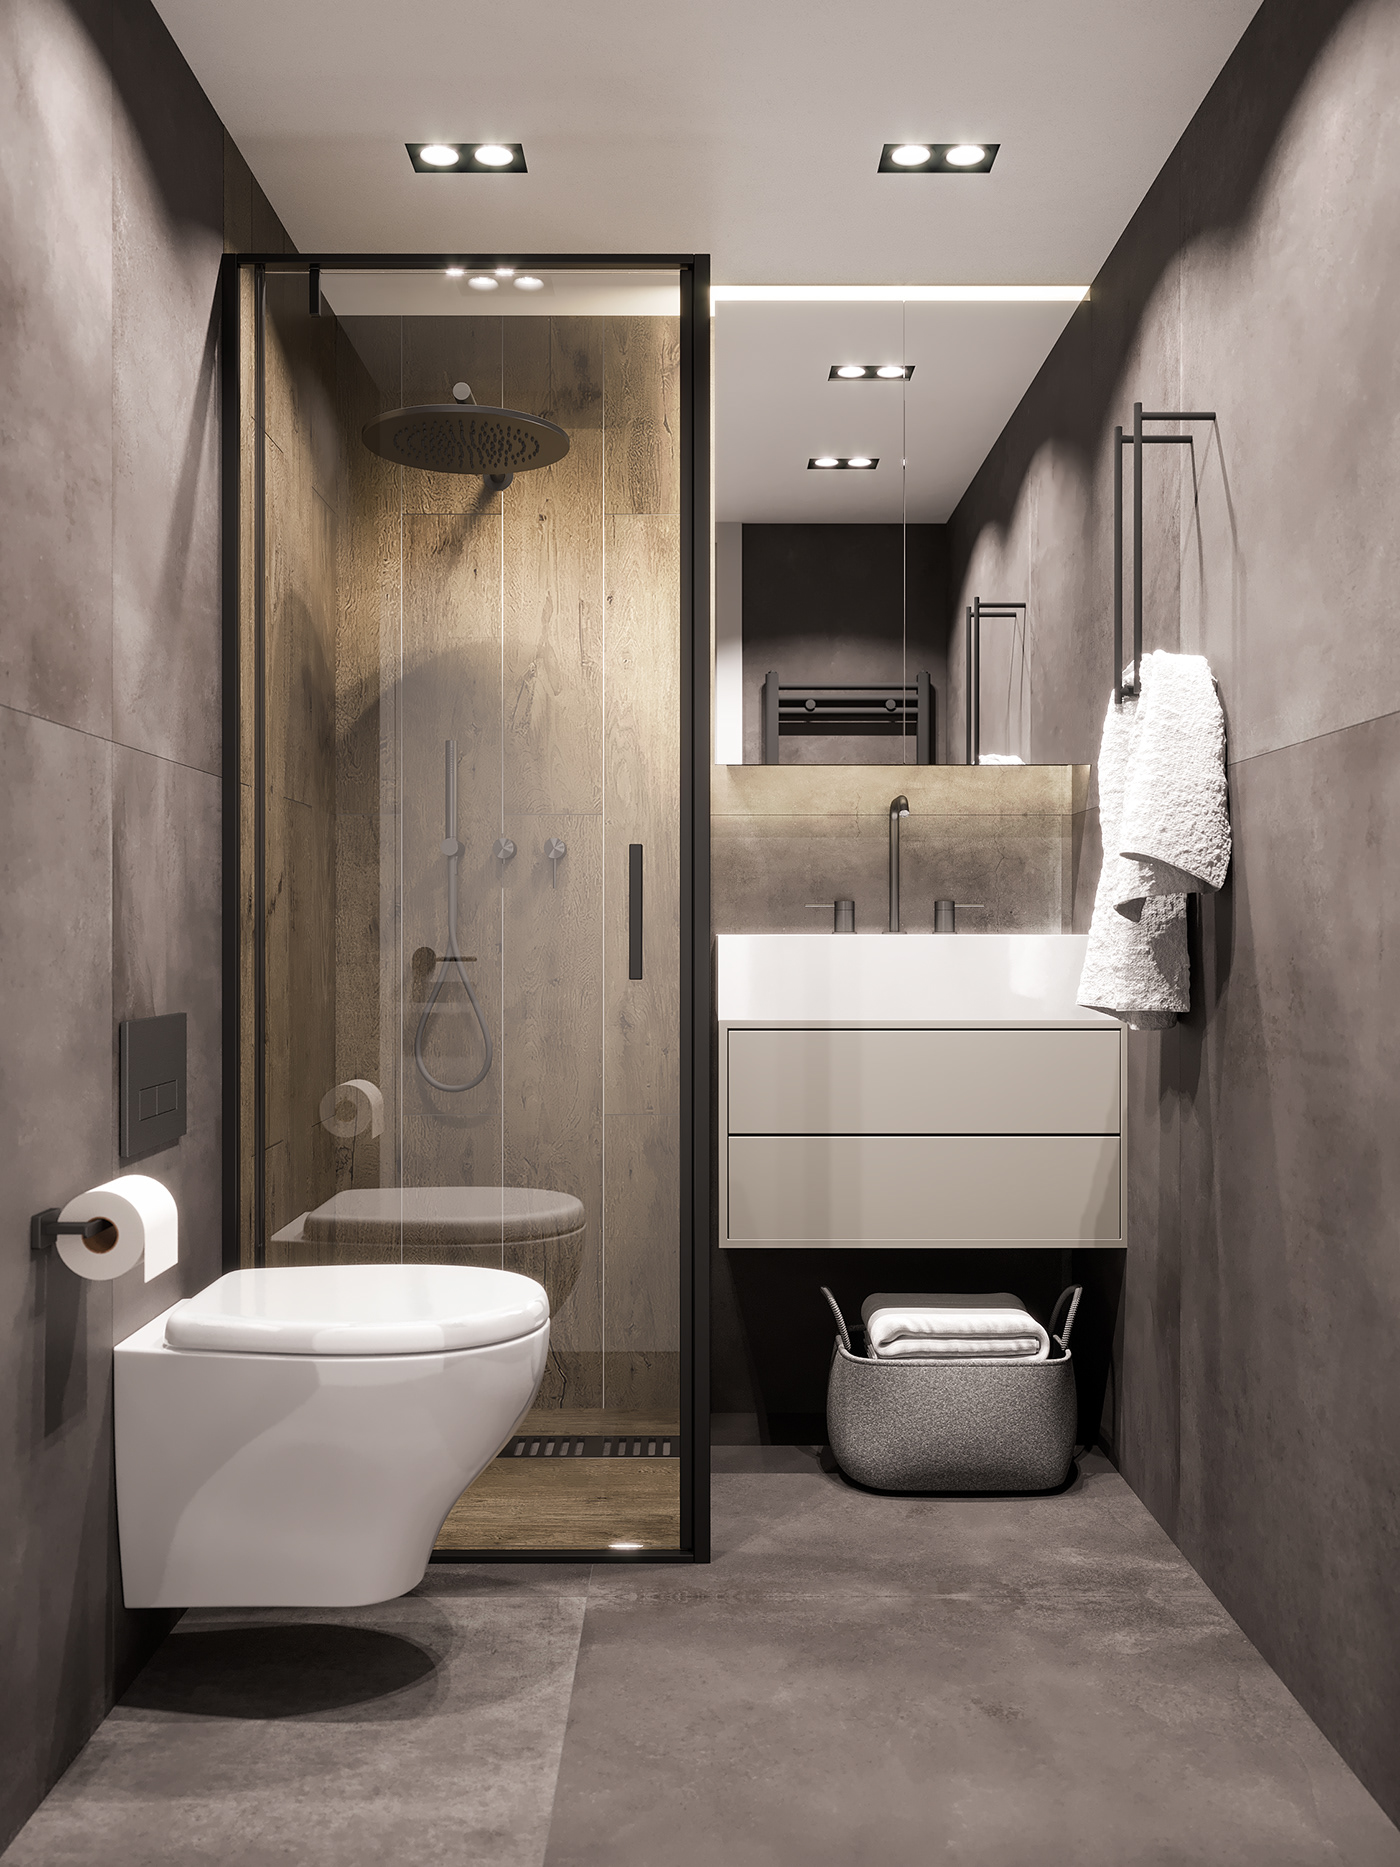 Phòng tắm với tông màu xám chủ đạo, nổi bật là buồng tắm ốp gỗ tạo cảm giác thư giãn, thân thiện cho người dùng.